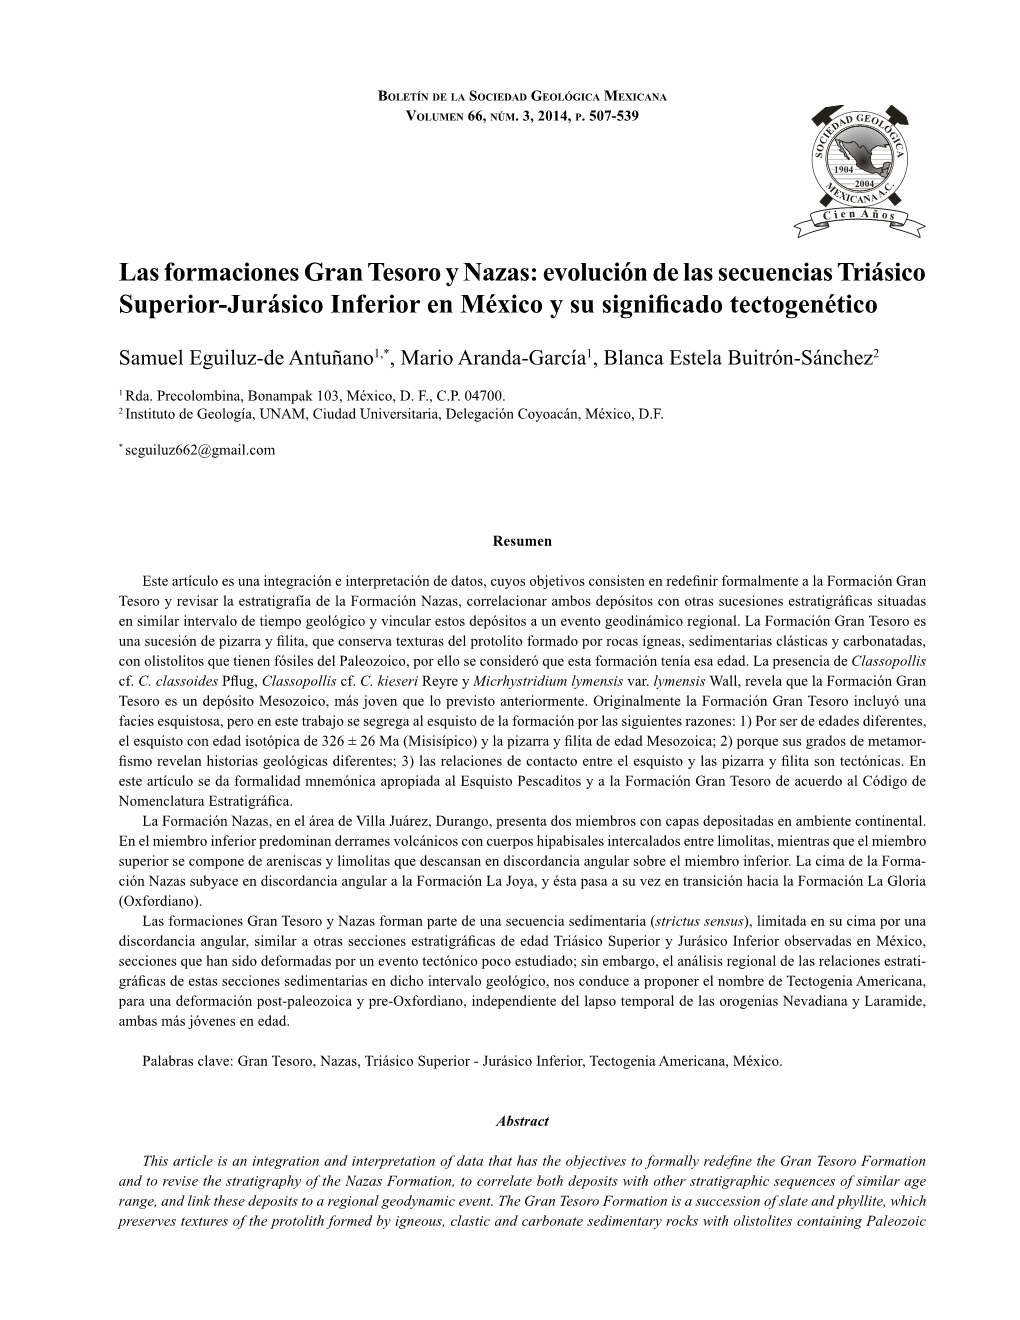 Las Formaciones Gran Tesoro Y Nazas 507 Boletín De La Sociedad Geológica Mexicana